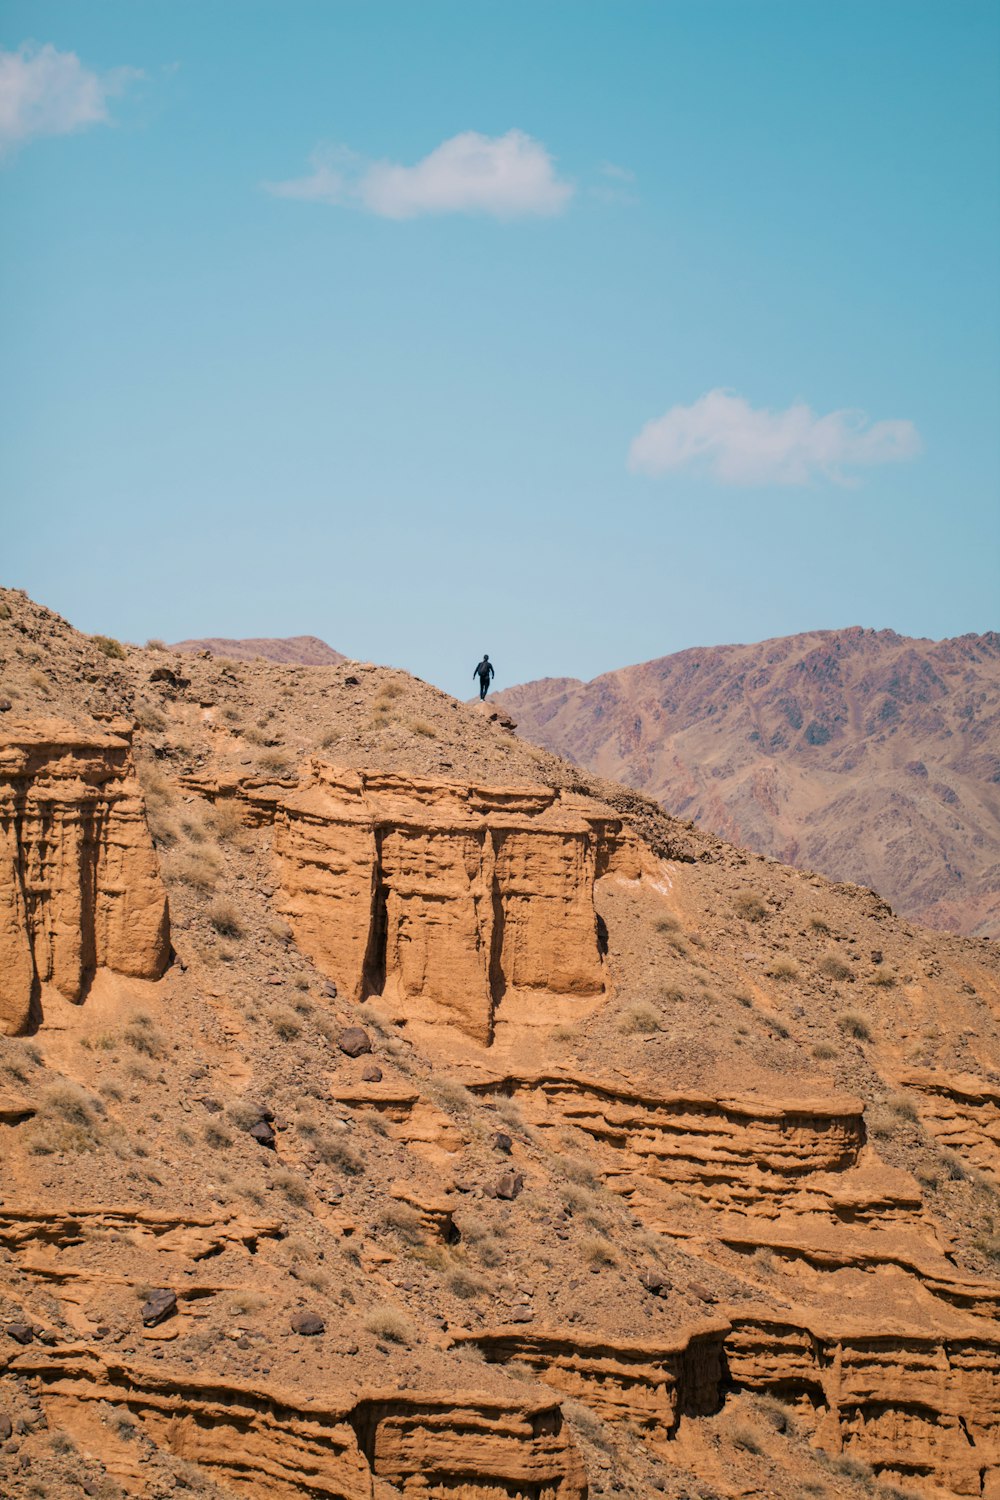 una persona in piedi sulla cima di una collina rocciosa